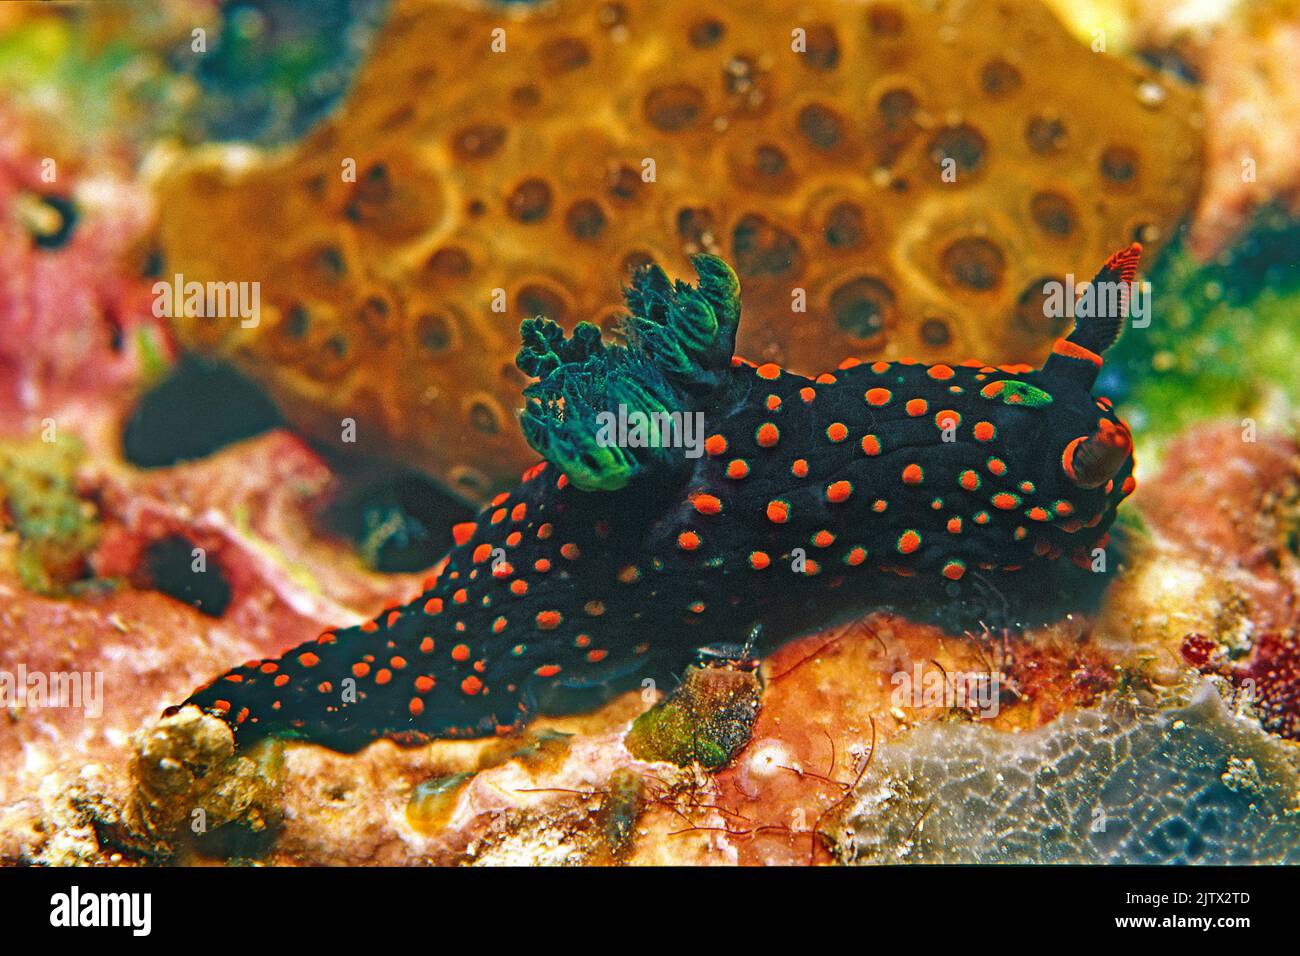 Nembrotha guttata, en un arrecife de coral, Maldivas, Océano Índico, Asia Foto de stock